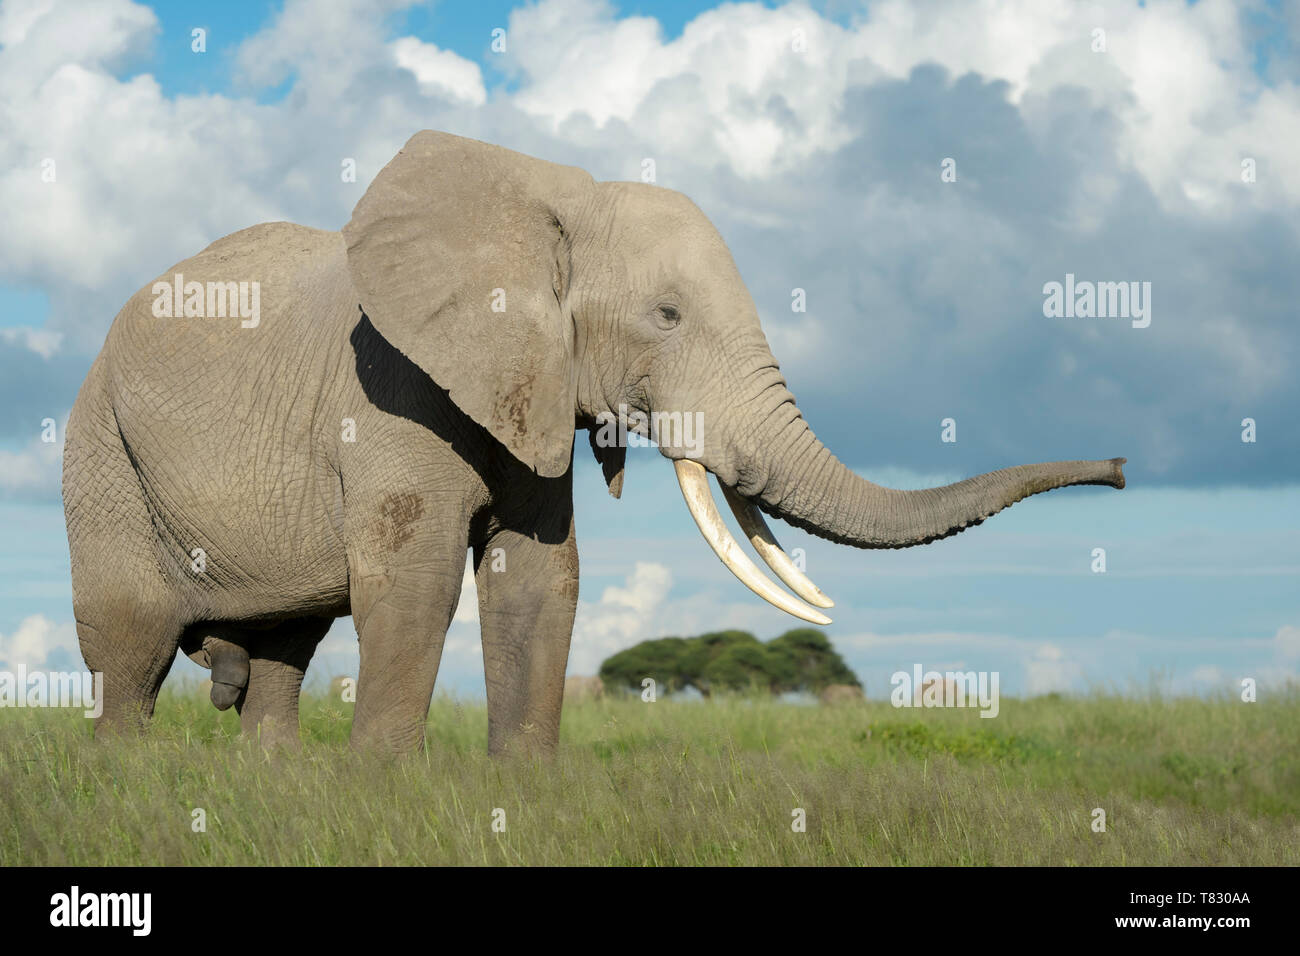 African elephant (Loxodonta africana) bull smelling with trunk, Amboseli national park, Kenya. Stock Photo